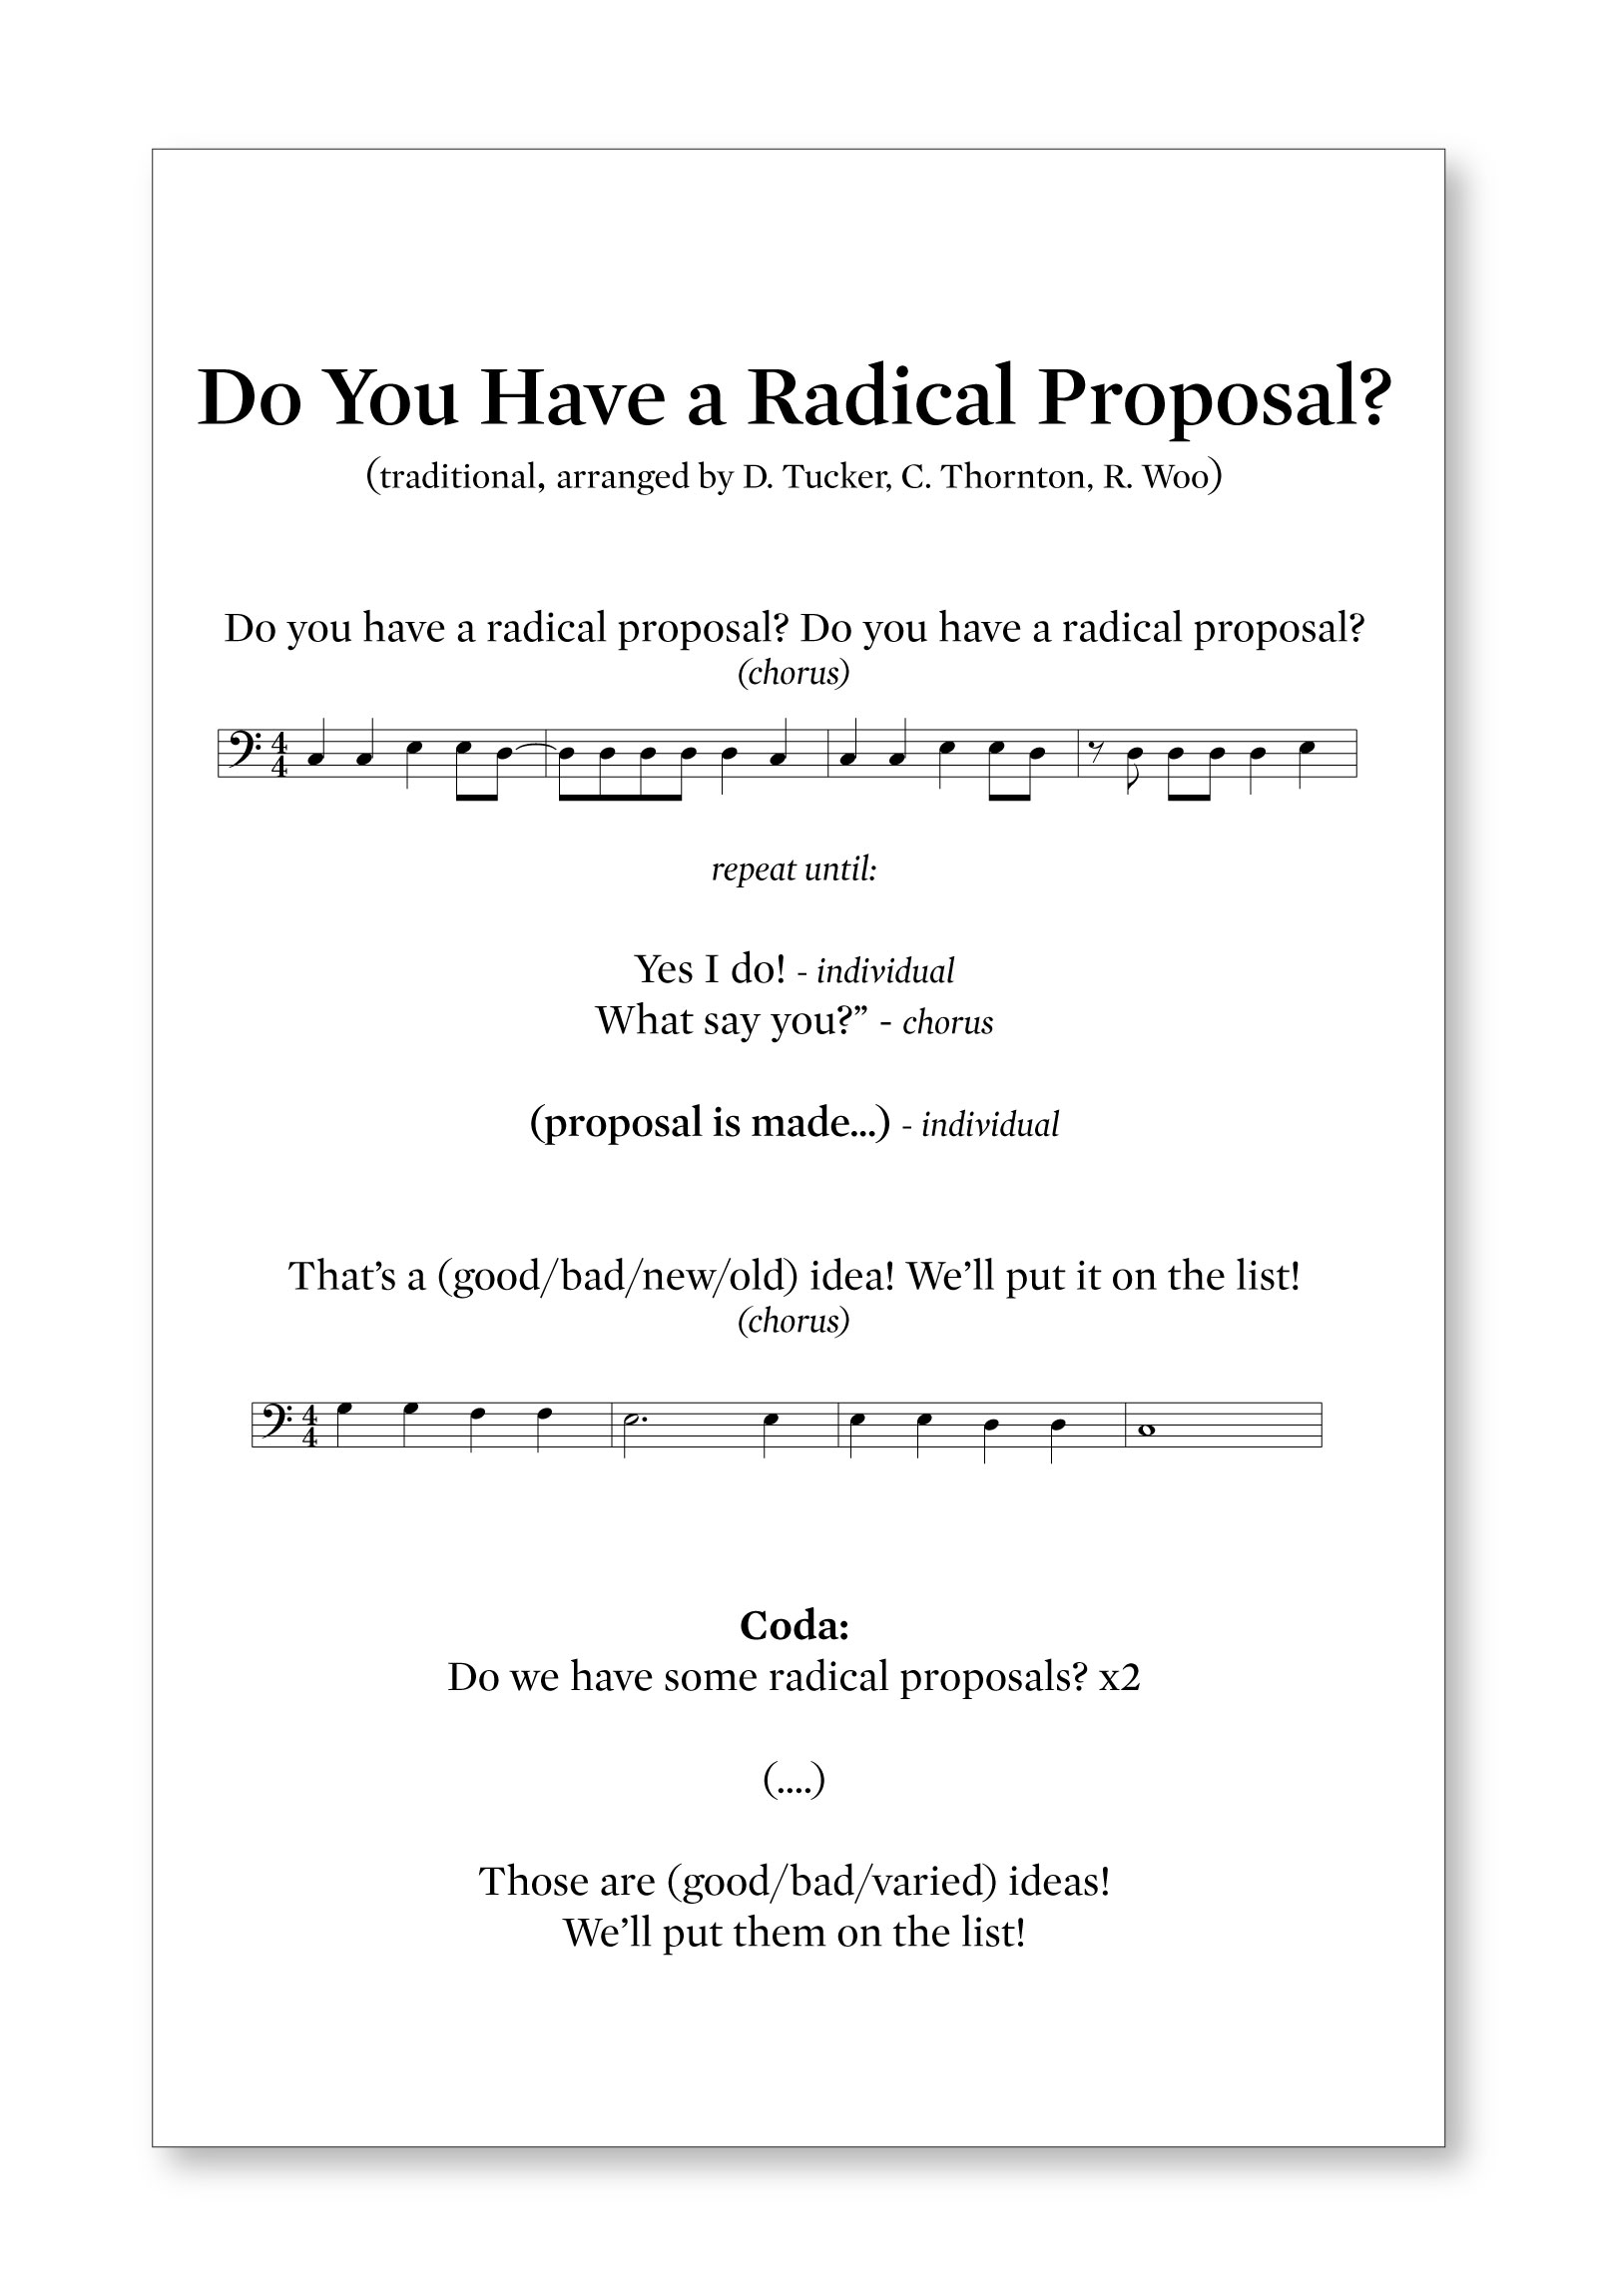 radicalproposal